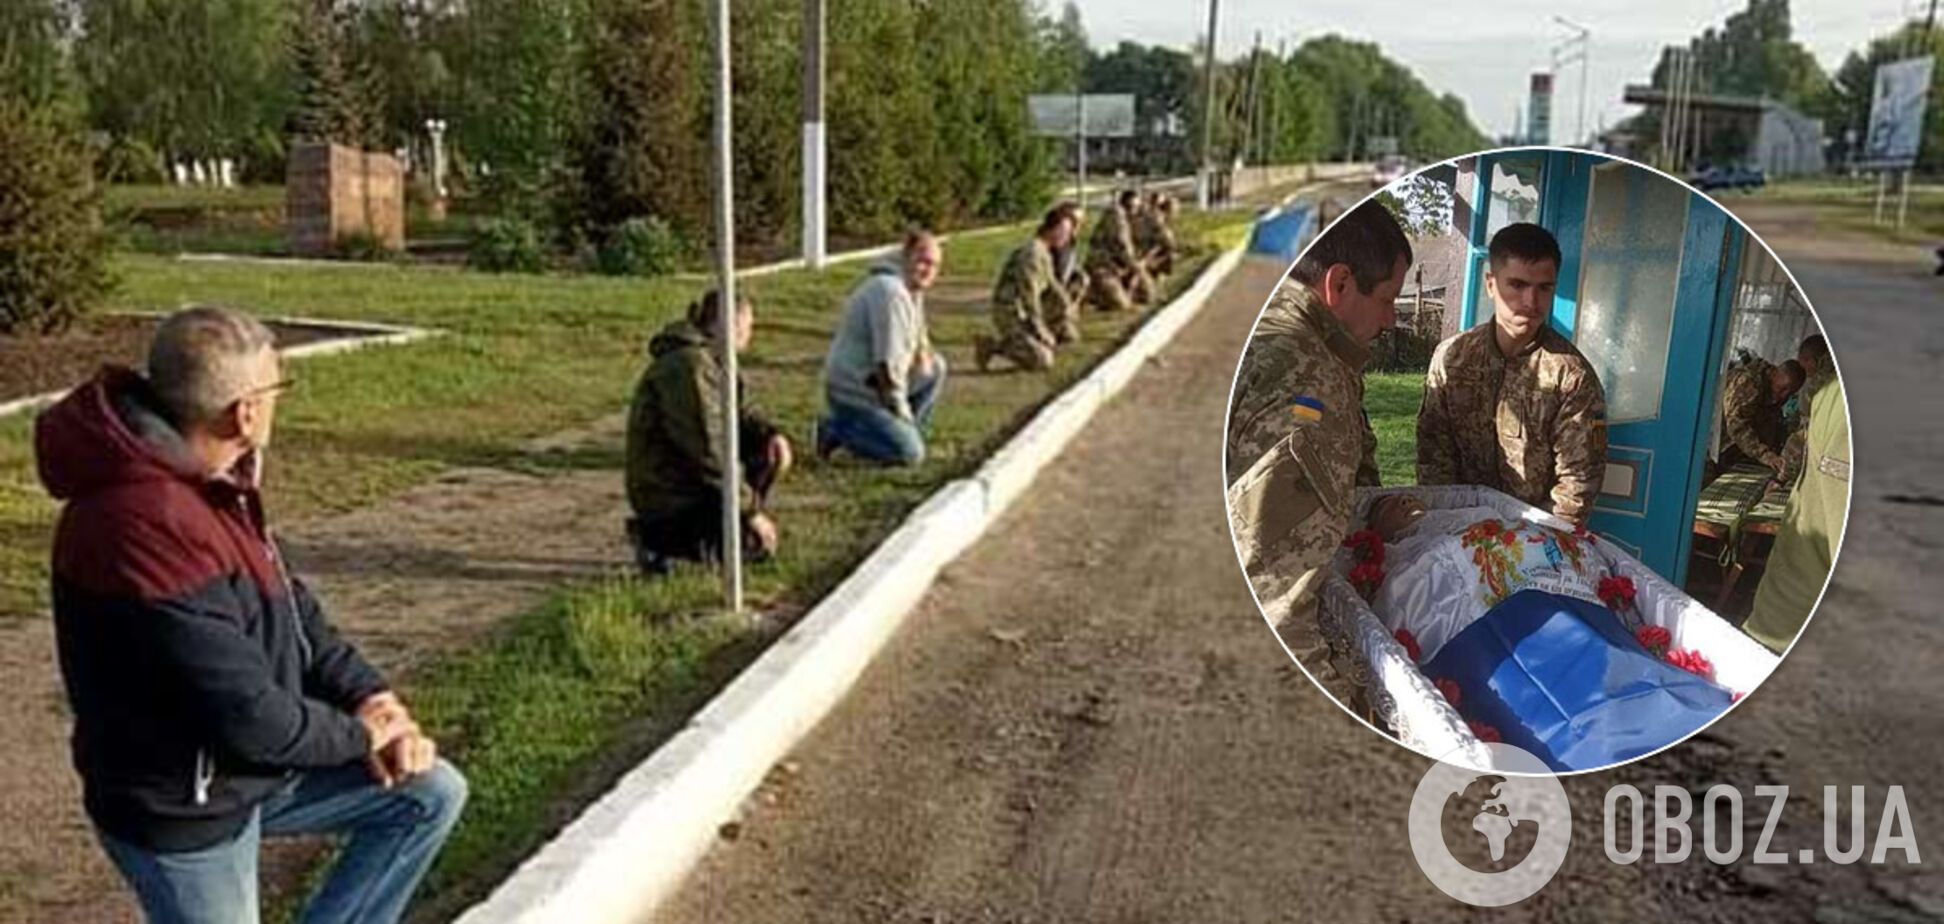 В Винницкой области простились с убитым на Донбассе воином ВСУ. Фото 18+